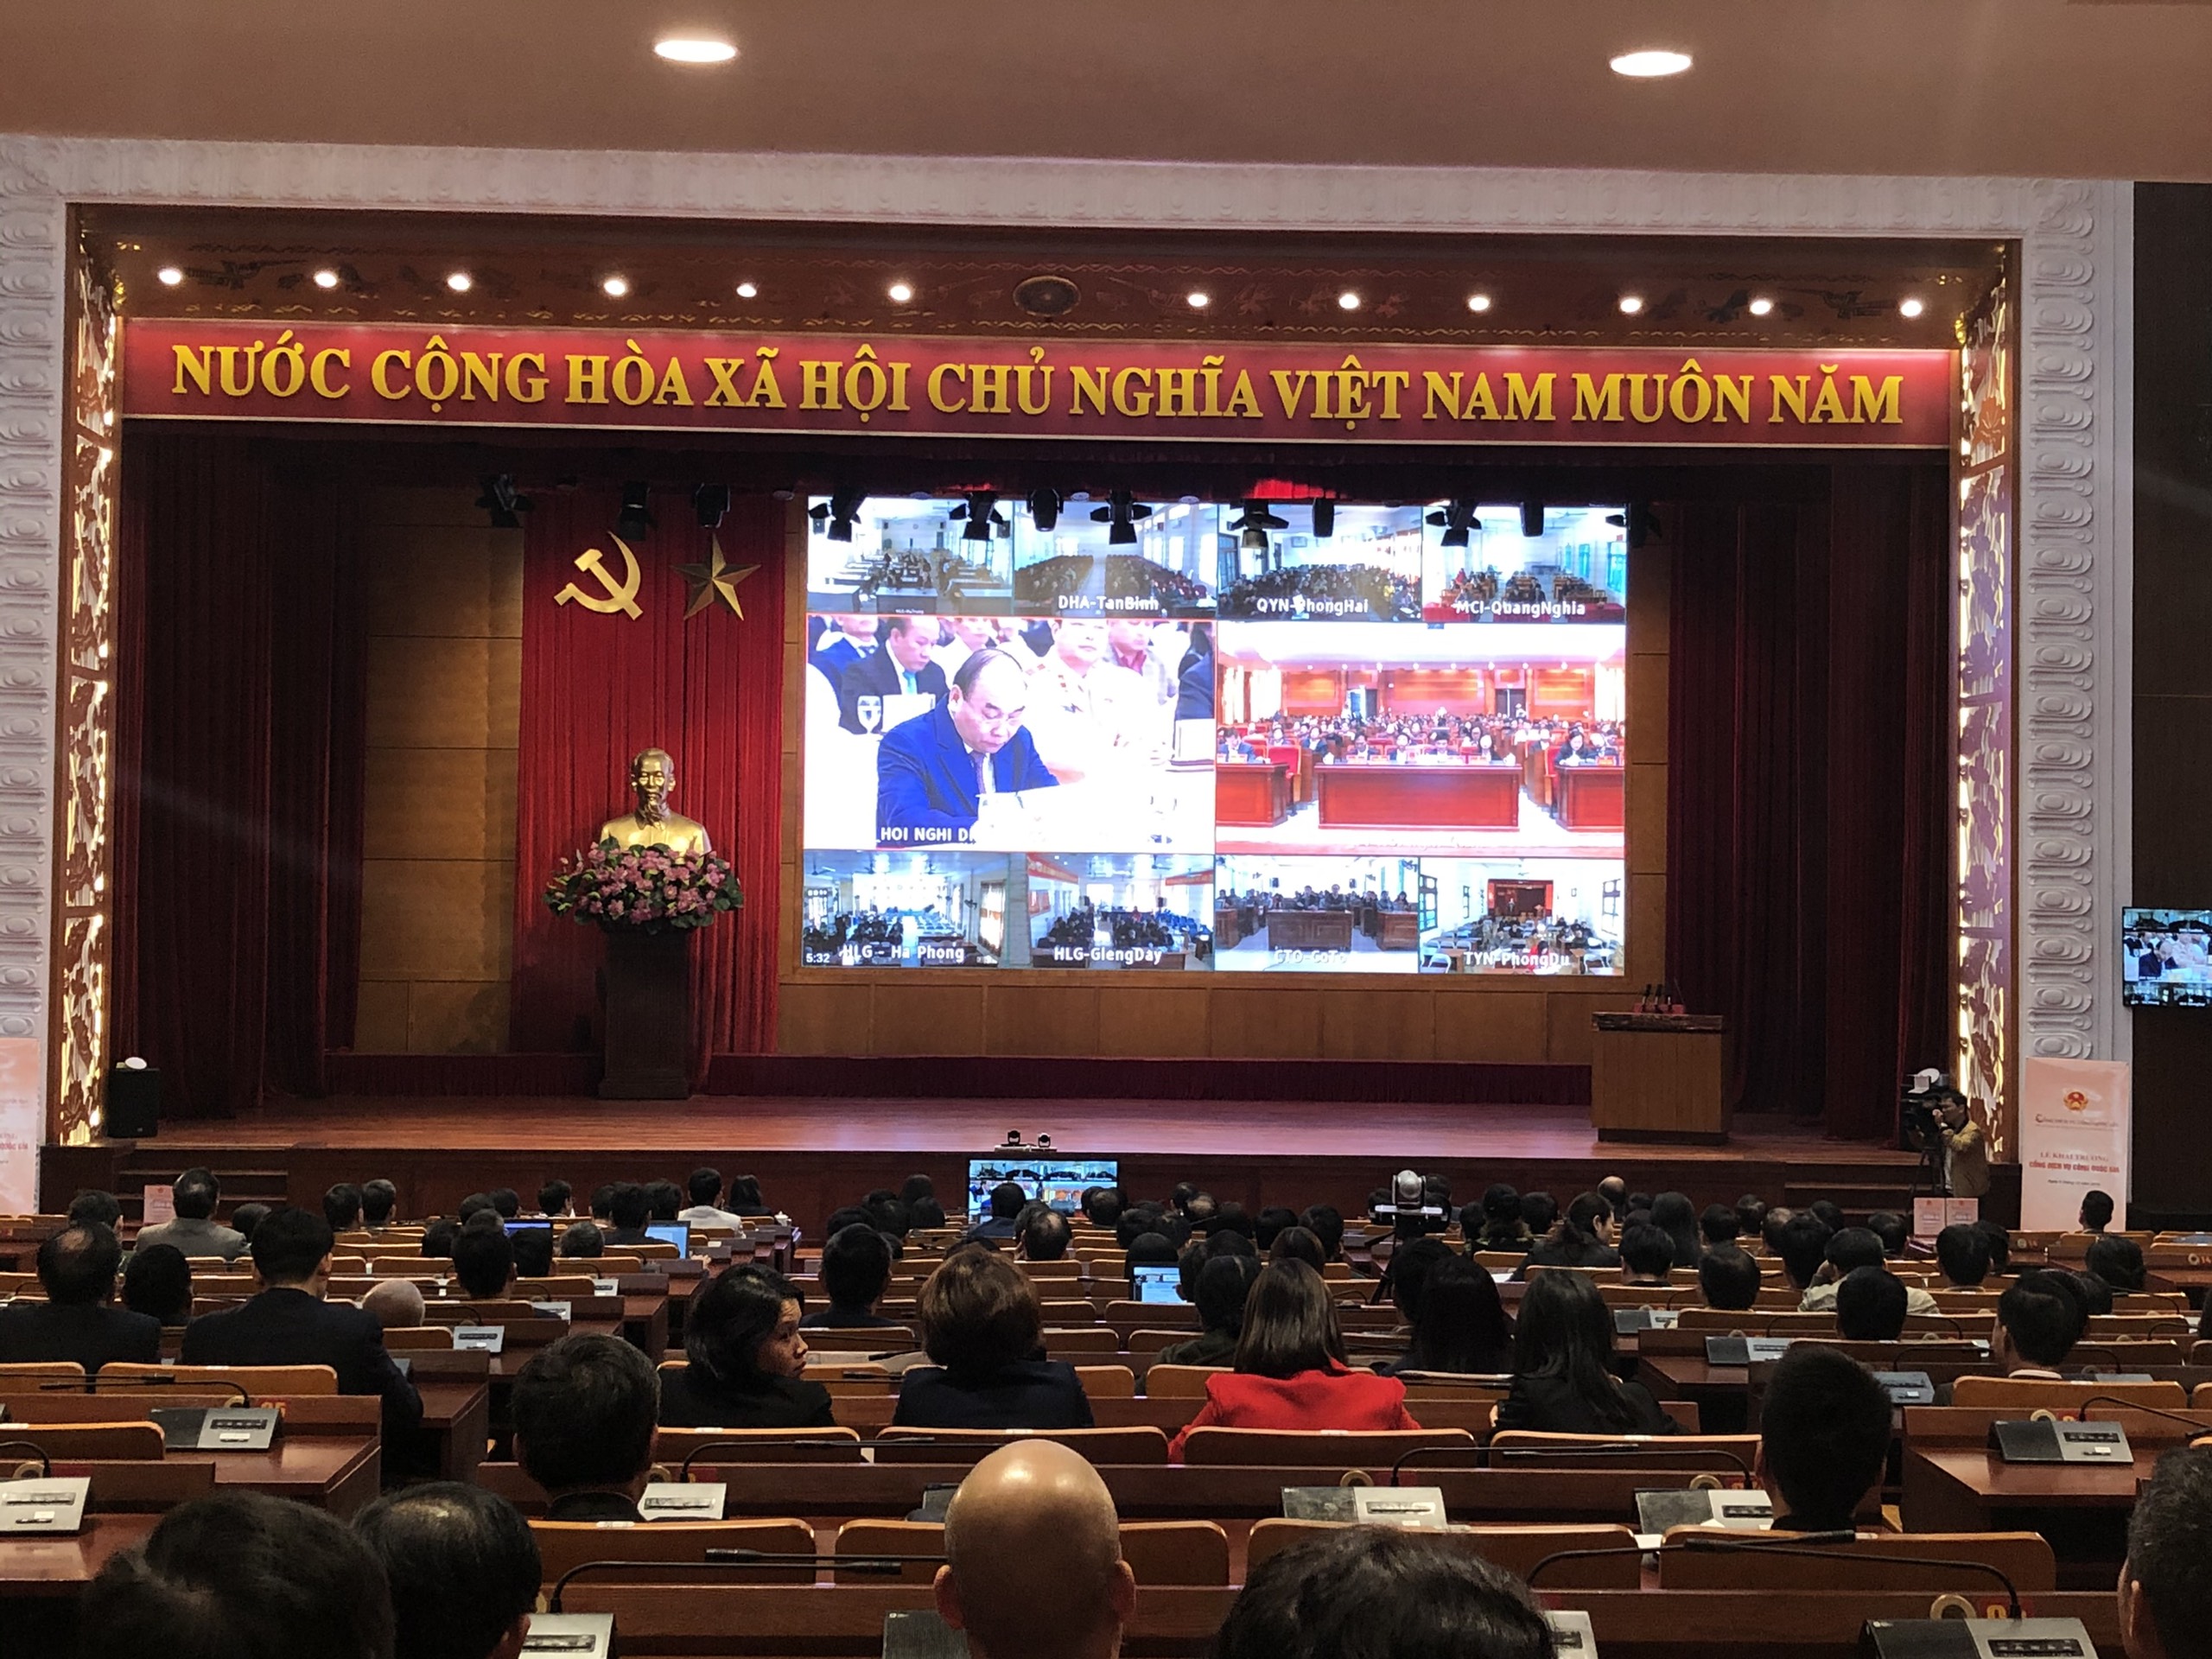 Với việc sớm xây dựng Cổng dịch vụ công và các thành quả đi đầu trong cải cách hành chính, tỉnh Quảng Ninh được chọn là một trong 3 địa phương (cùng với TP Hà Nội và TP Hồ Chí Minh) thực hiện thí điểm việc kết nối liên thông với Cổng dịch vụ công quốc gia.